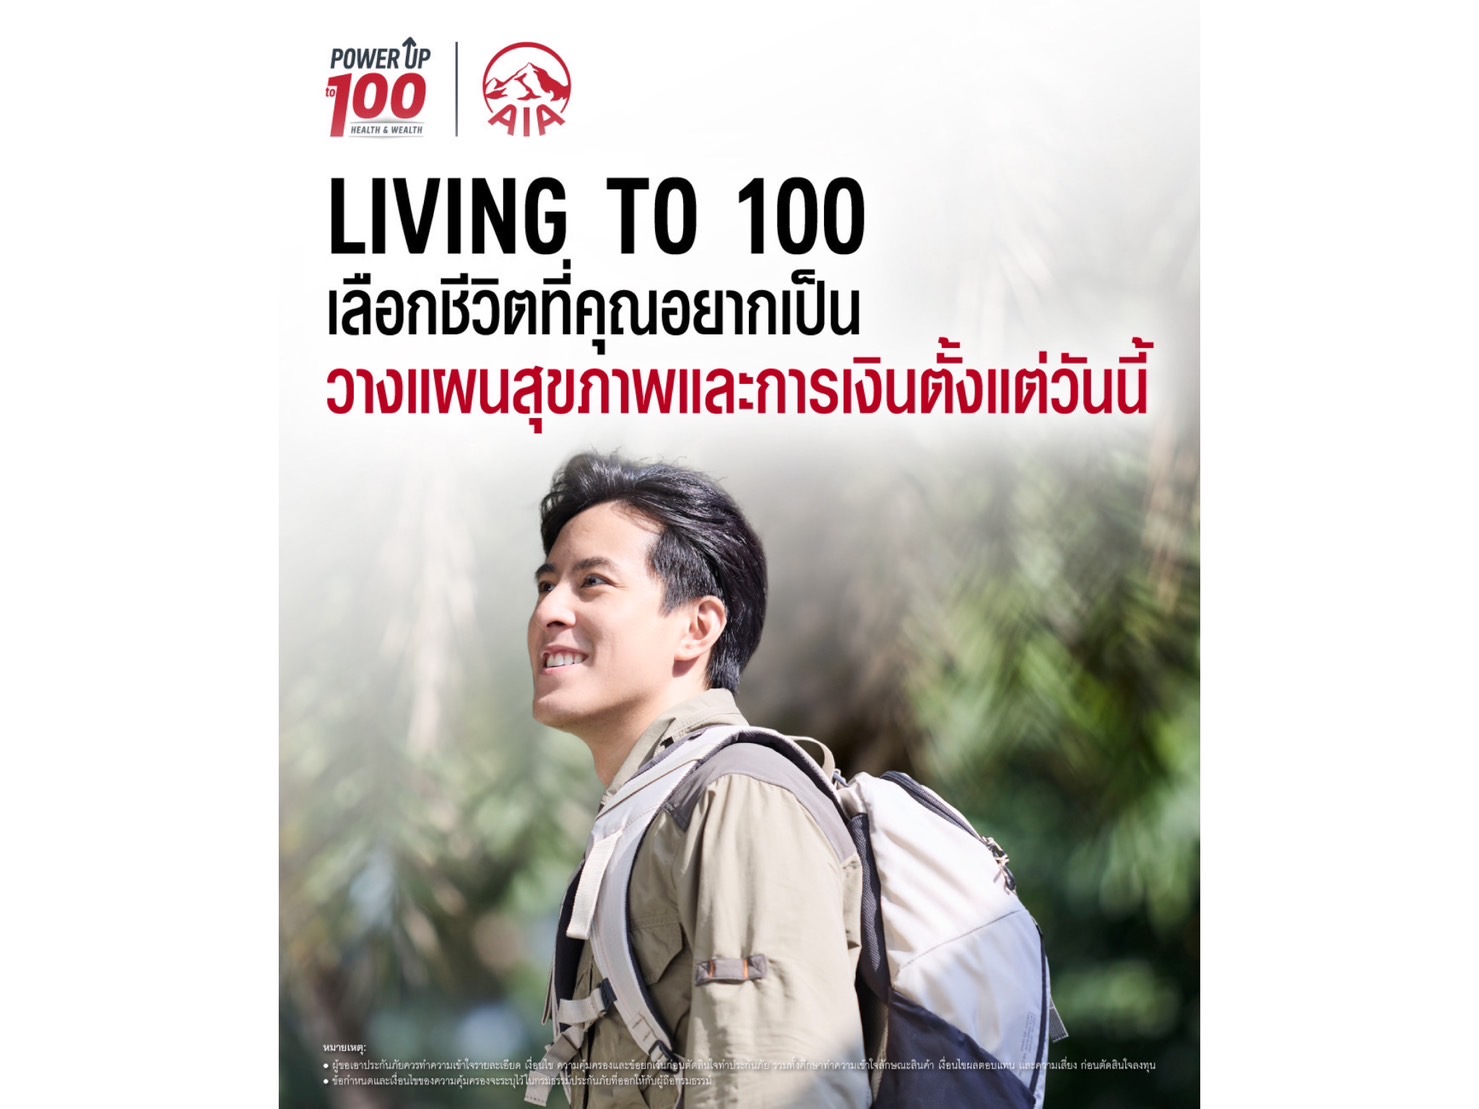 เอไอเอ ประเทศไทย เปิดตัวภาพยนตร์โฆษณาชุดใหม่ “Living to 100” ชวนคนไทยวางแผนสุขภาพและการเงิน เพื่อชีวิตที่ทุกคนเลือกเองได้